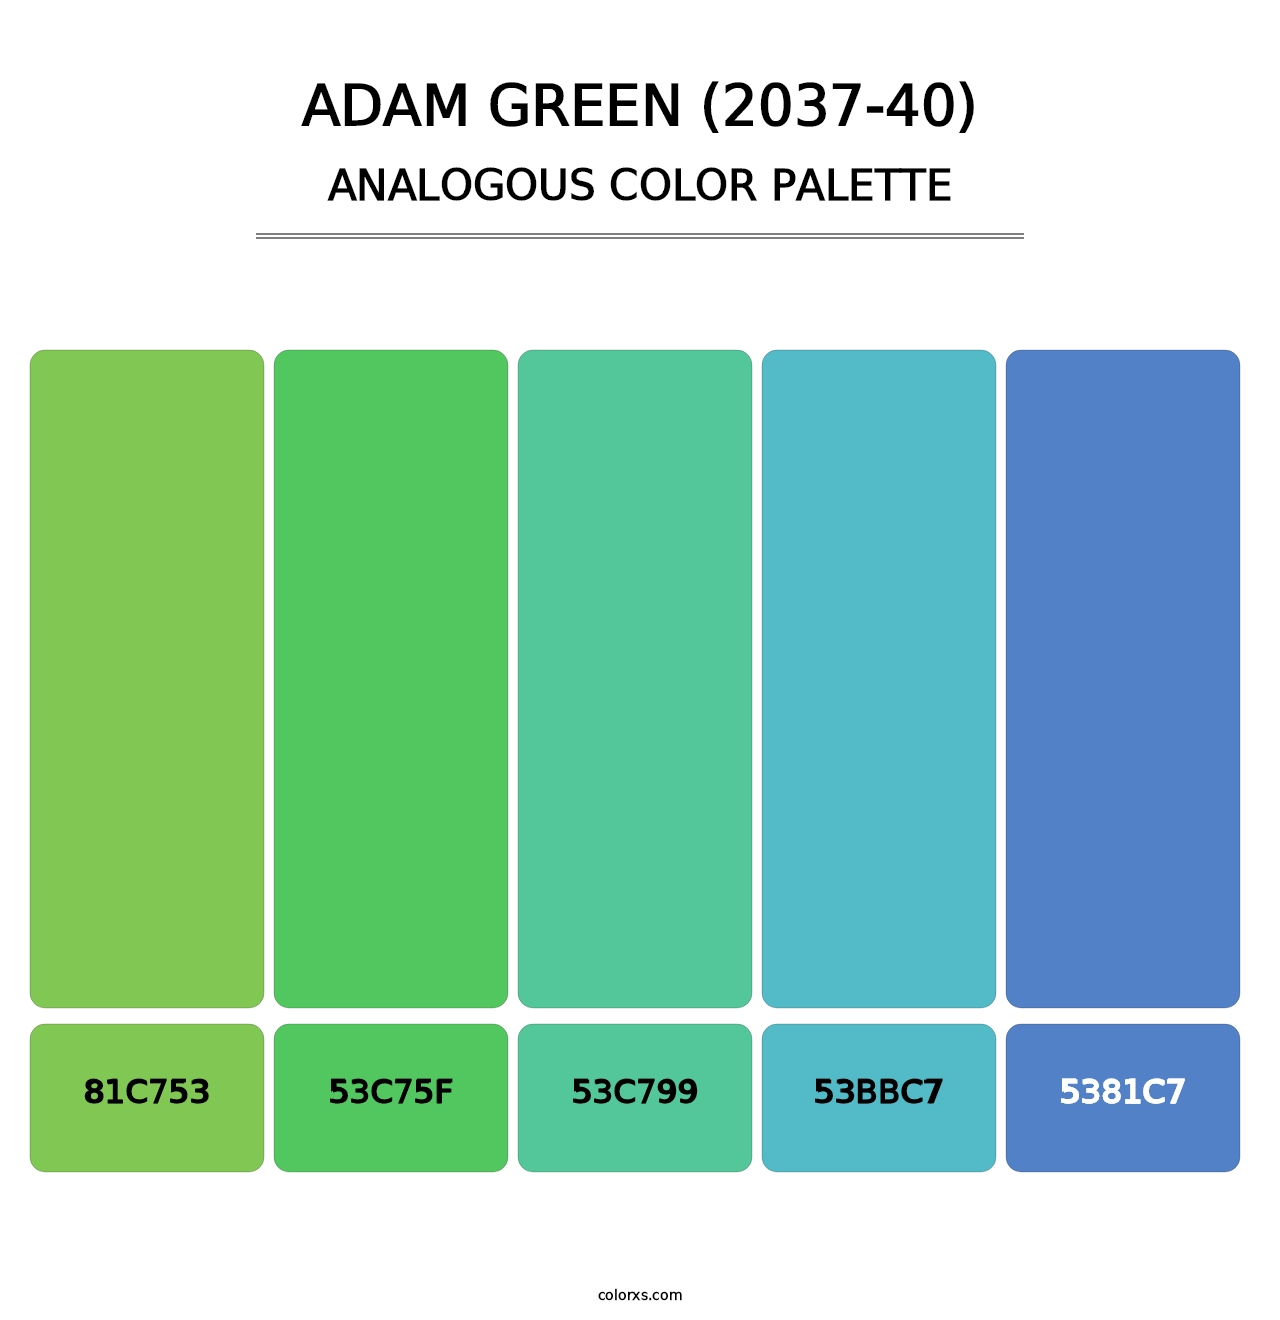 Adam Green (2037-40) - Analogous Color Palette